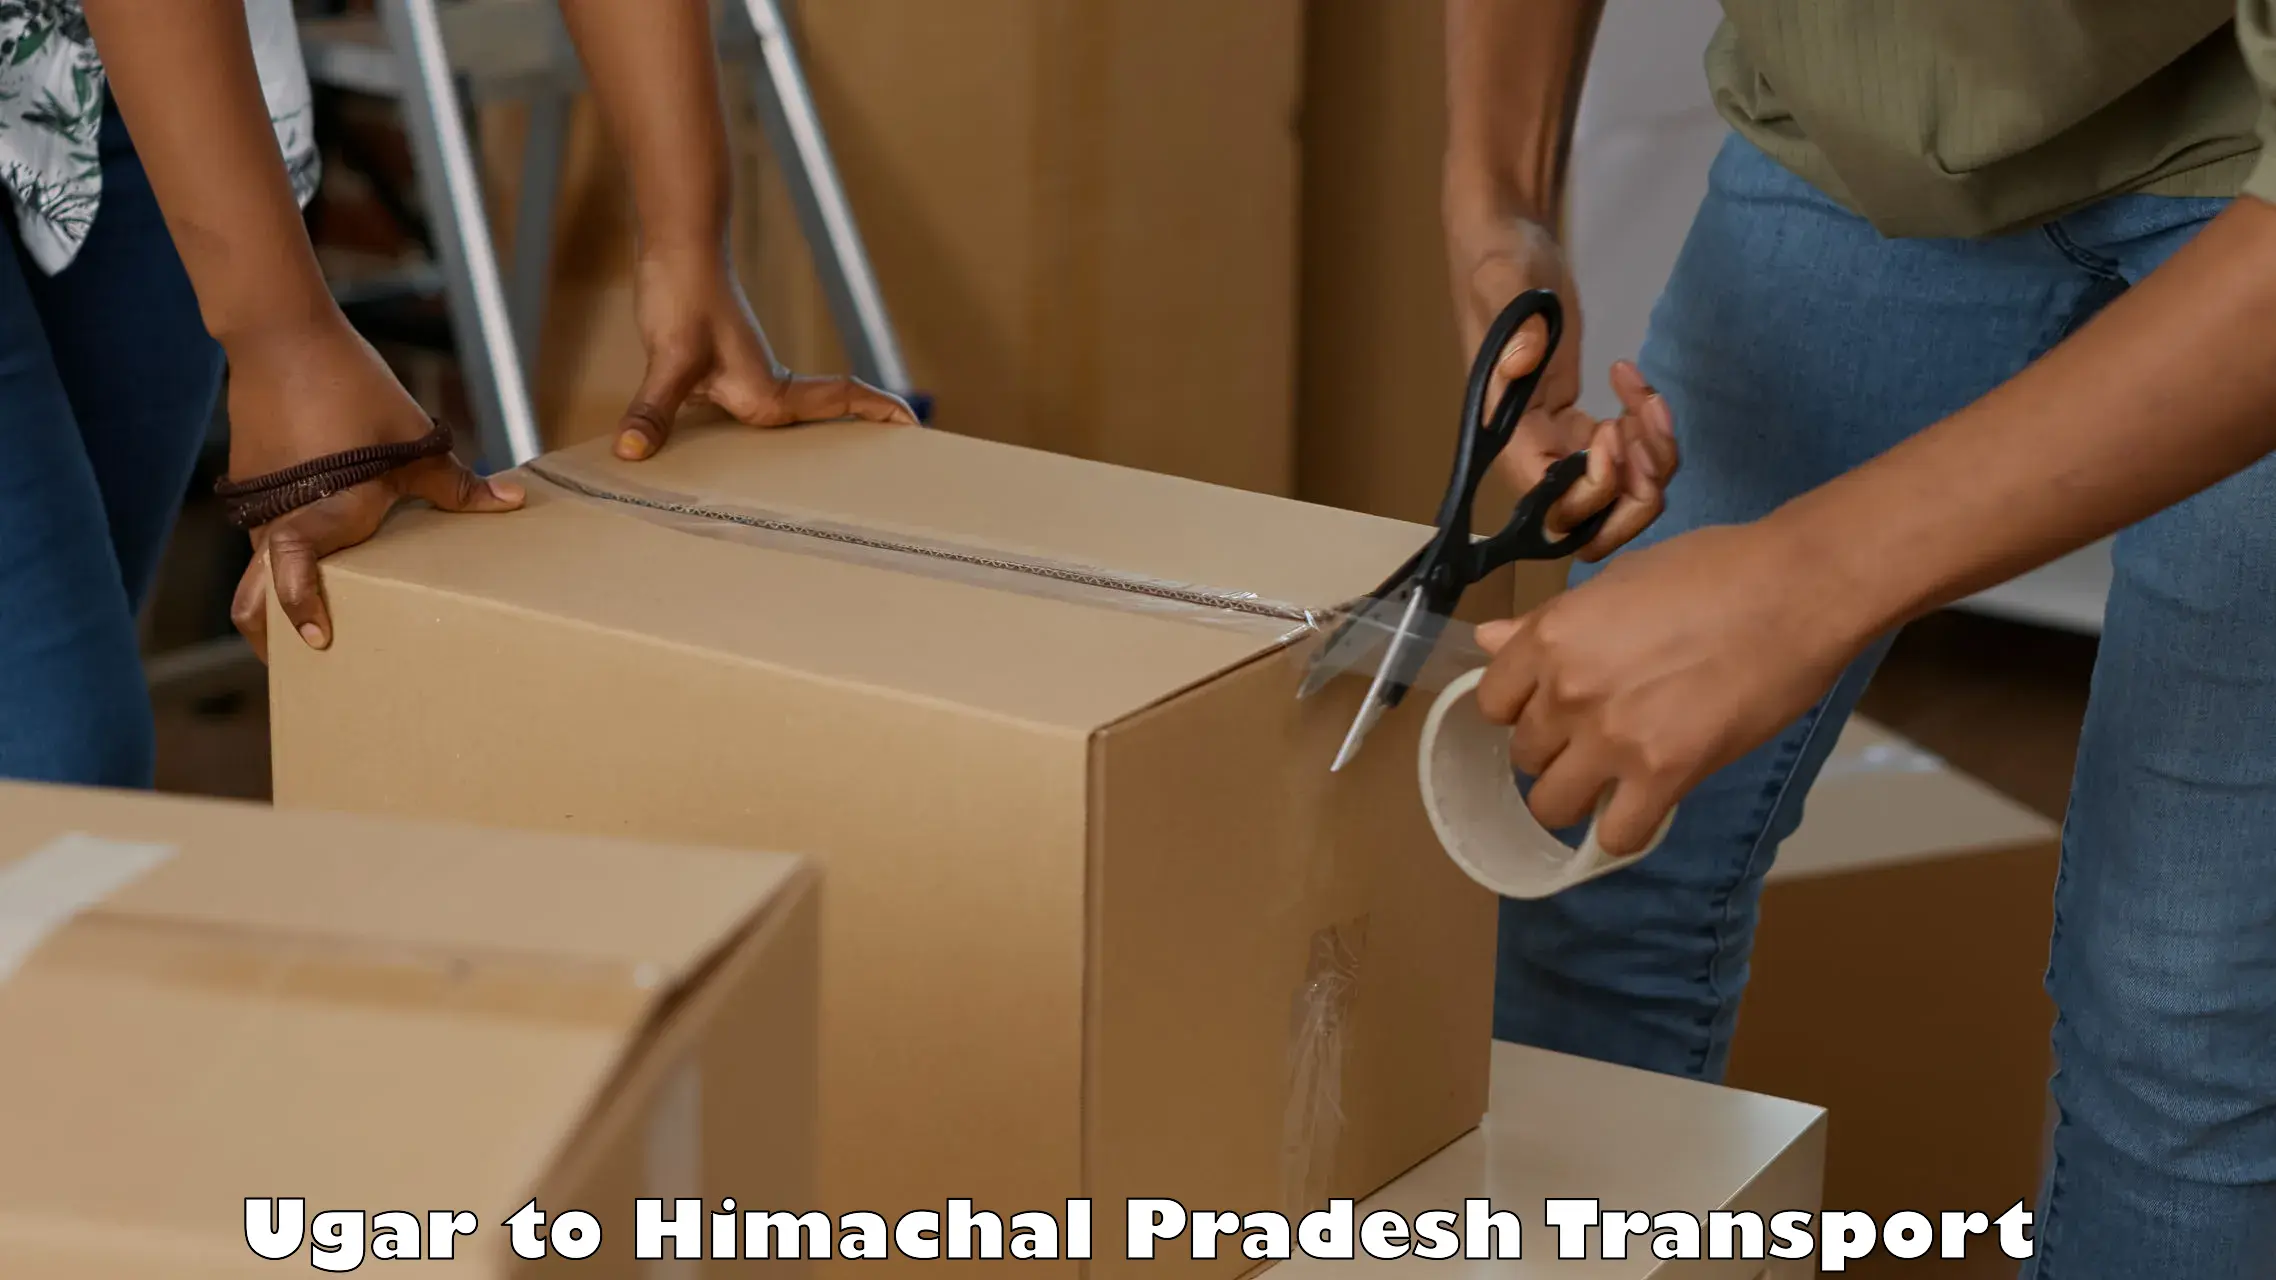 Shipping services Ugar to Una Himachal Pradesh